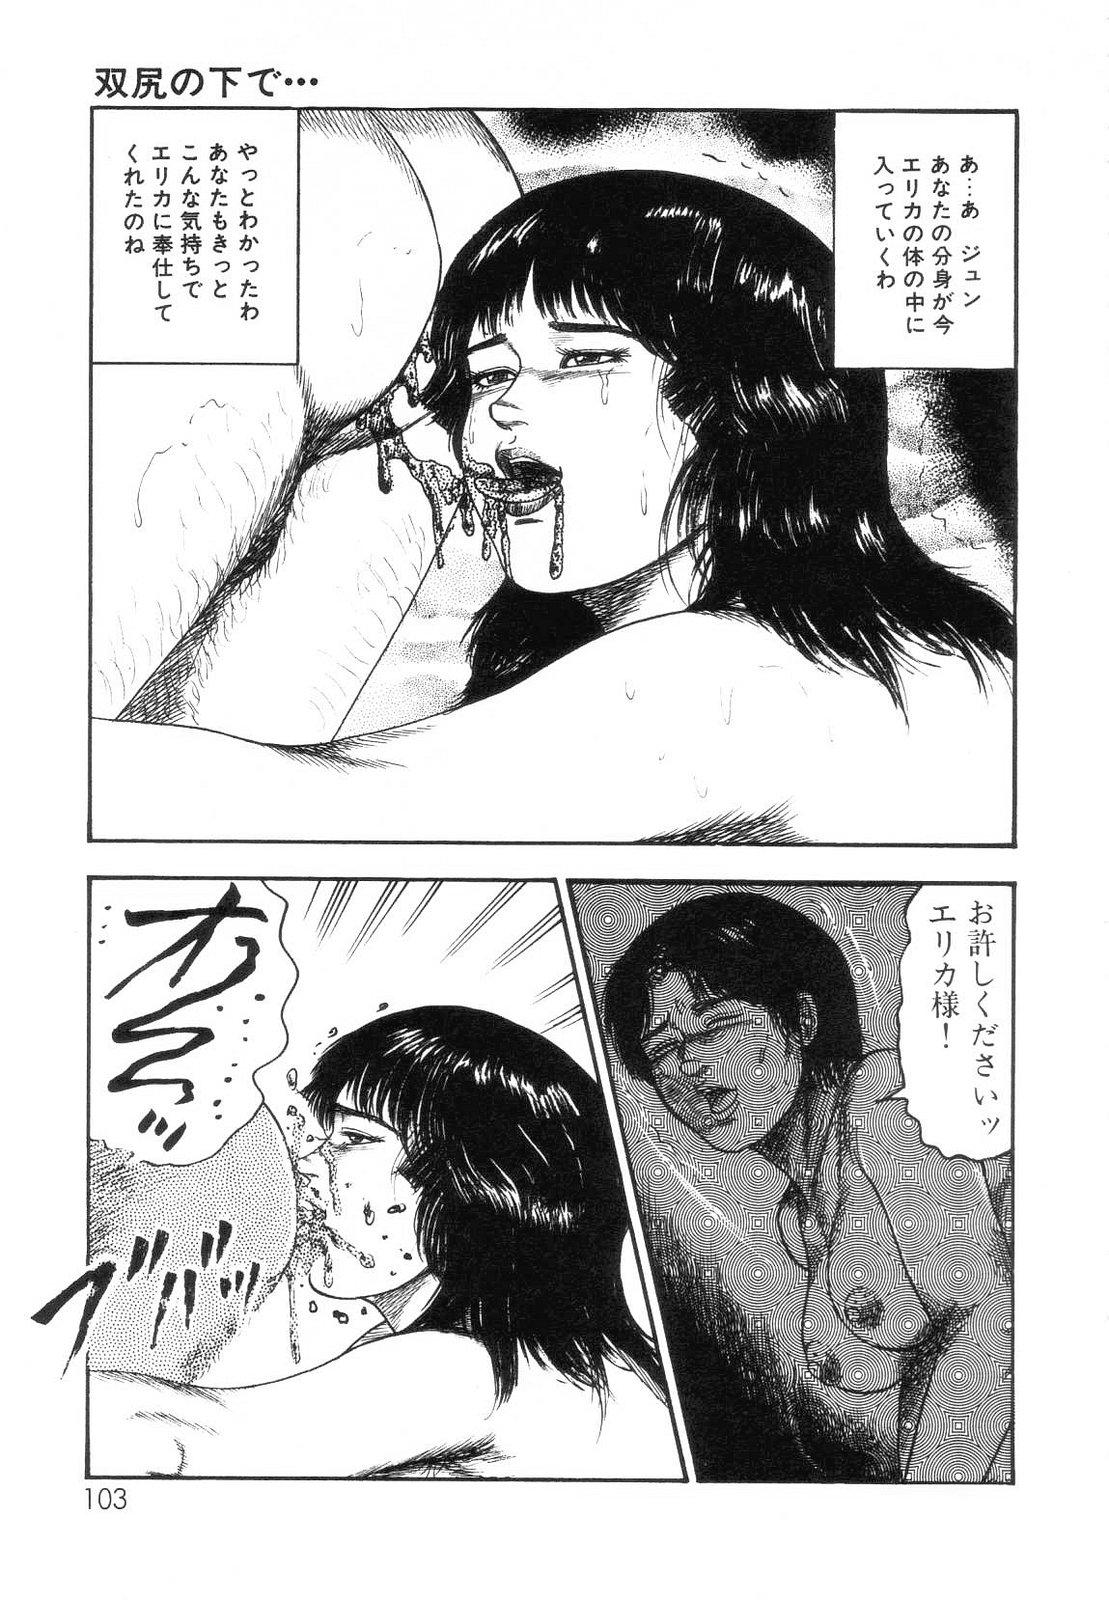 Shiro no Mokushiroku Vol. 7 - Shiiku Ningyou Erika no Shou 104